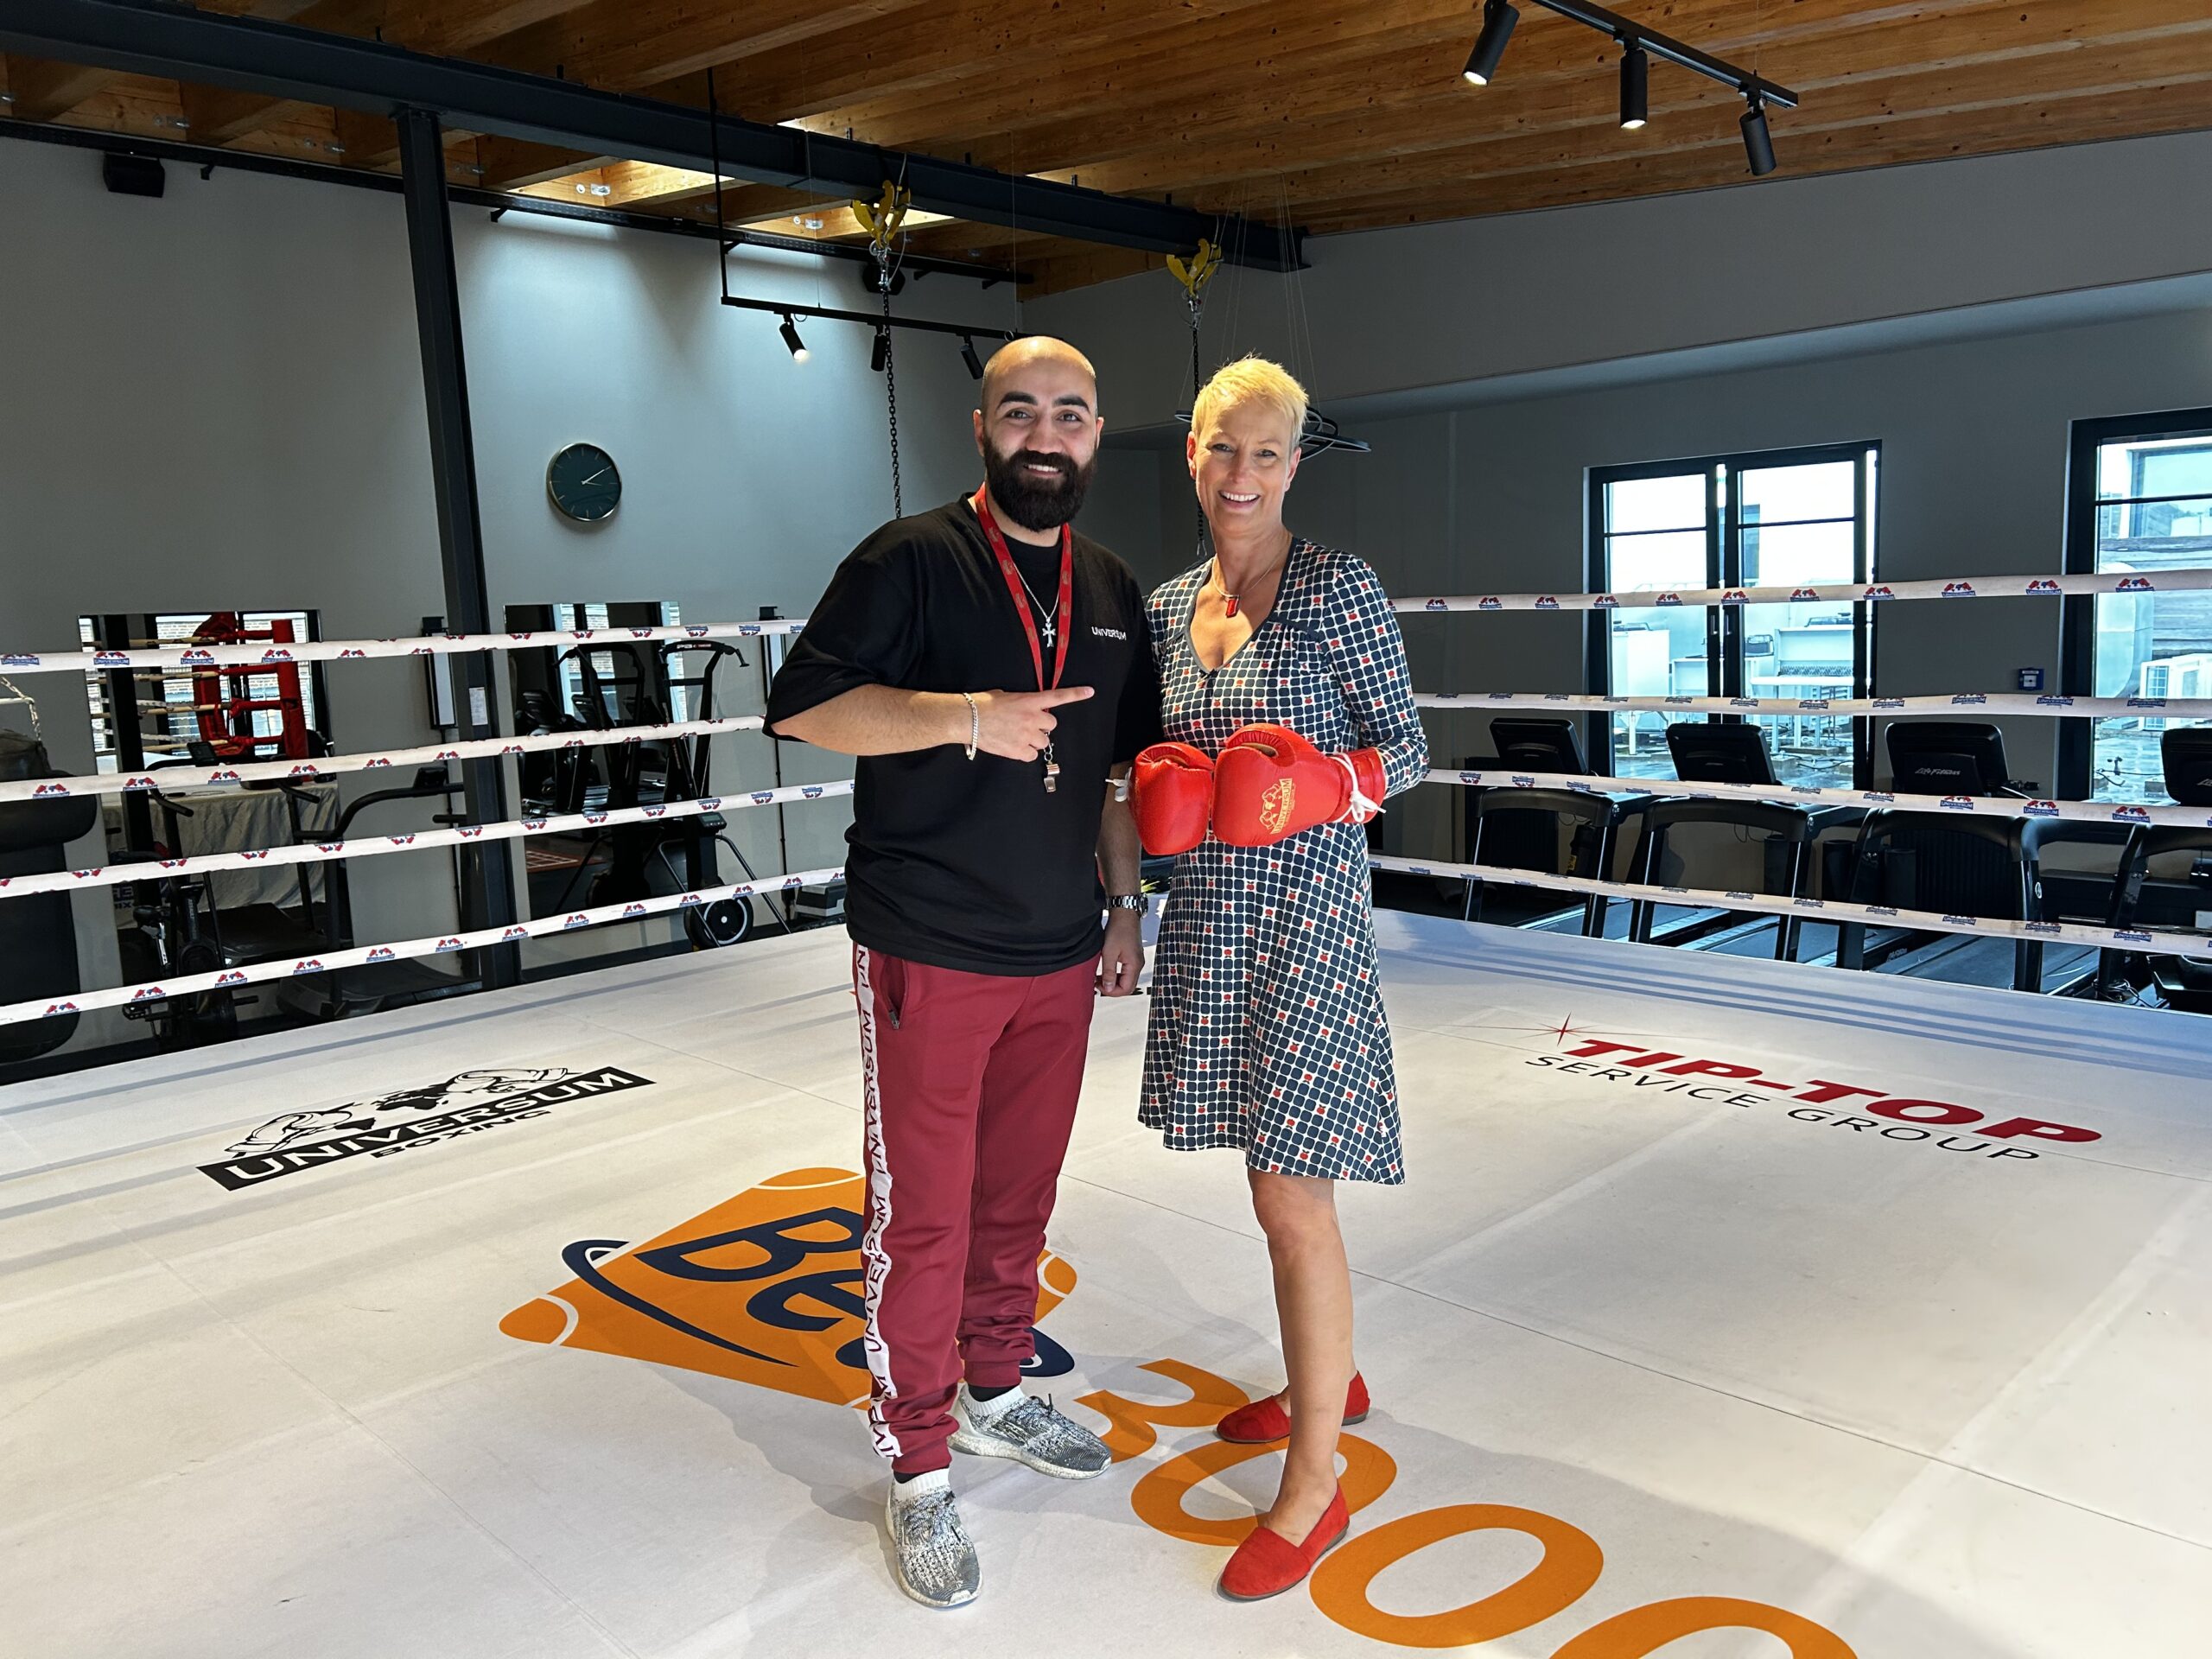 Stefanie von Berg, Leiterin des Bezirks Altona, und Trainer Robert Harutyunyan haben neue Räume für den Verein „Kampf deines Lebens“ gefunden.